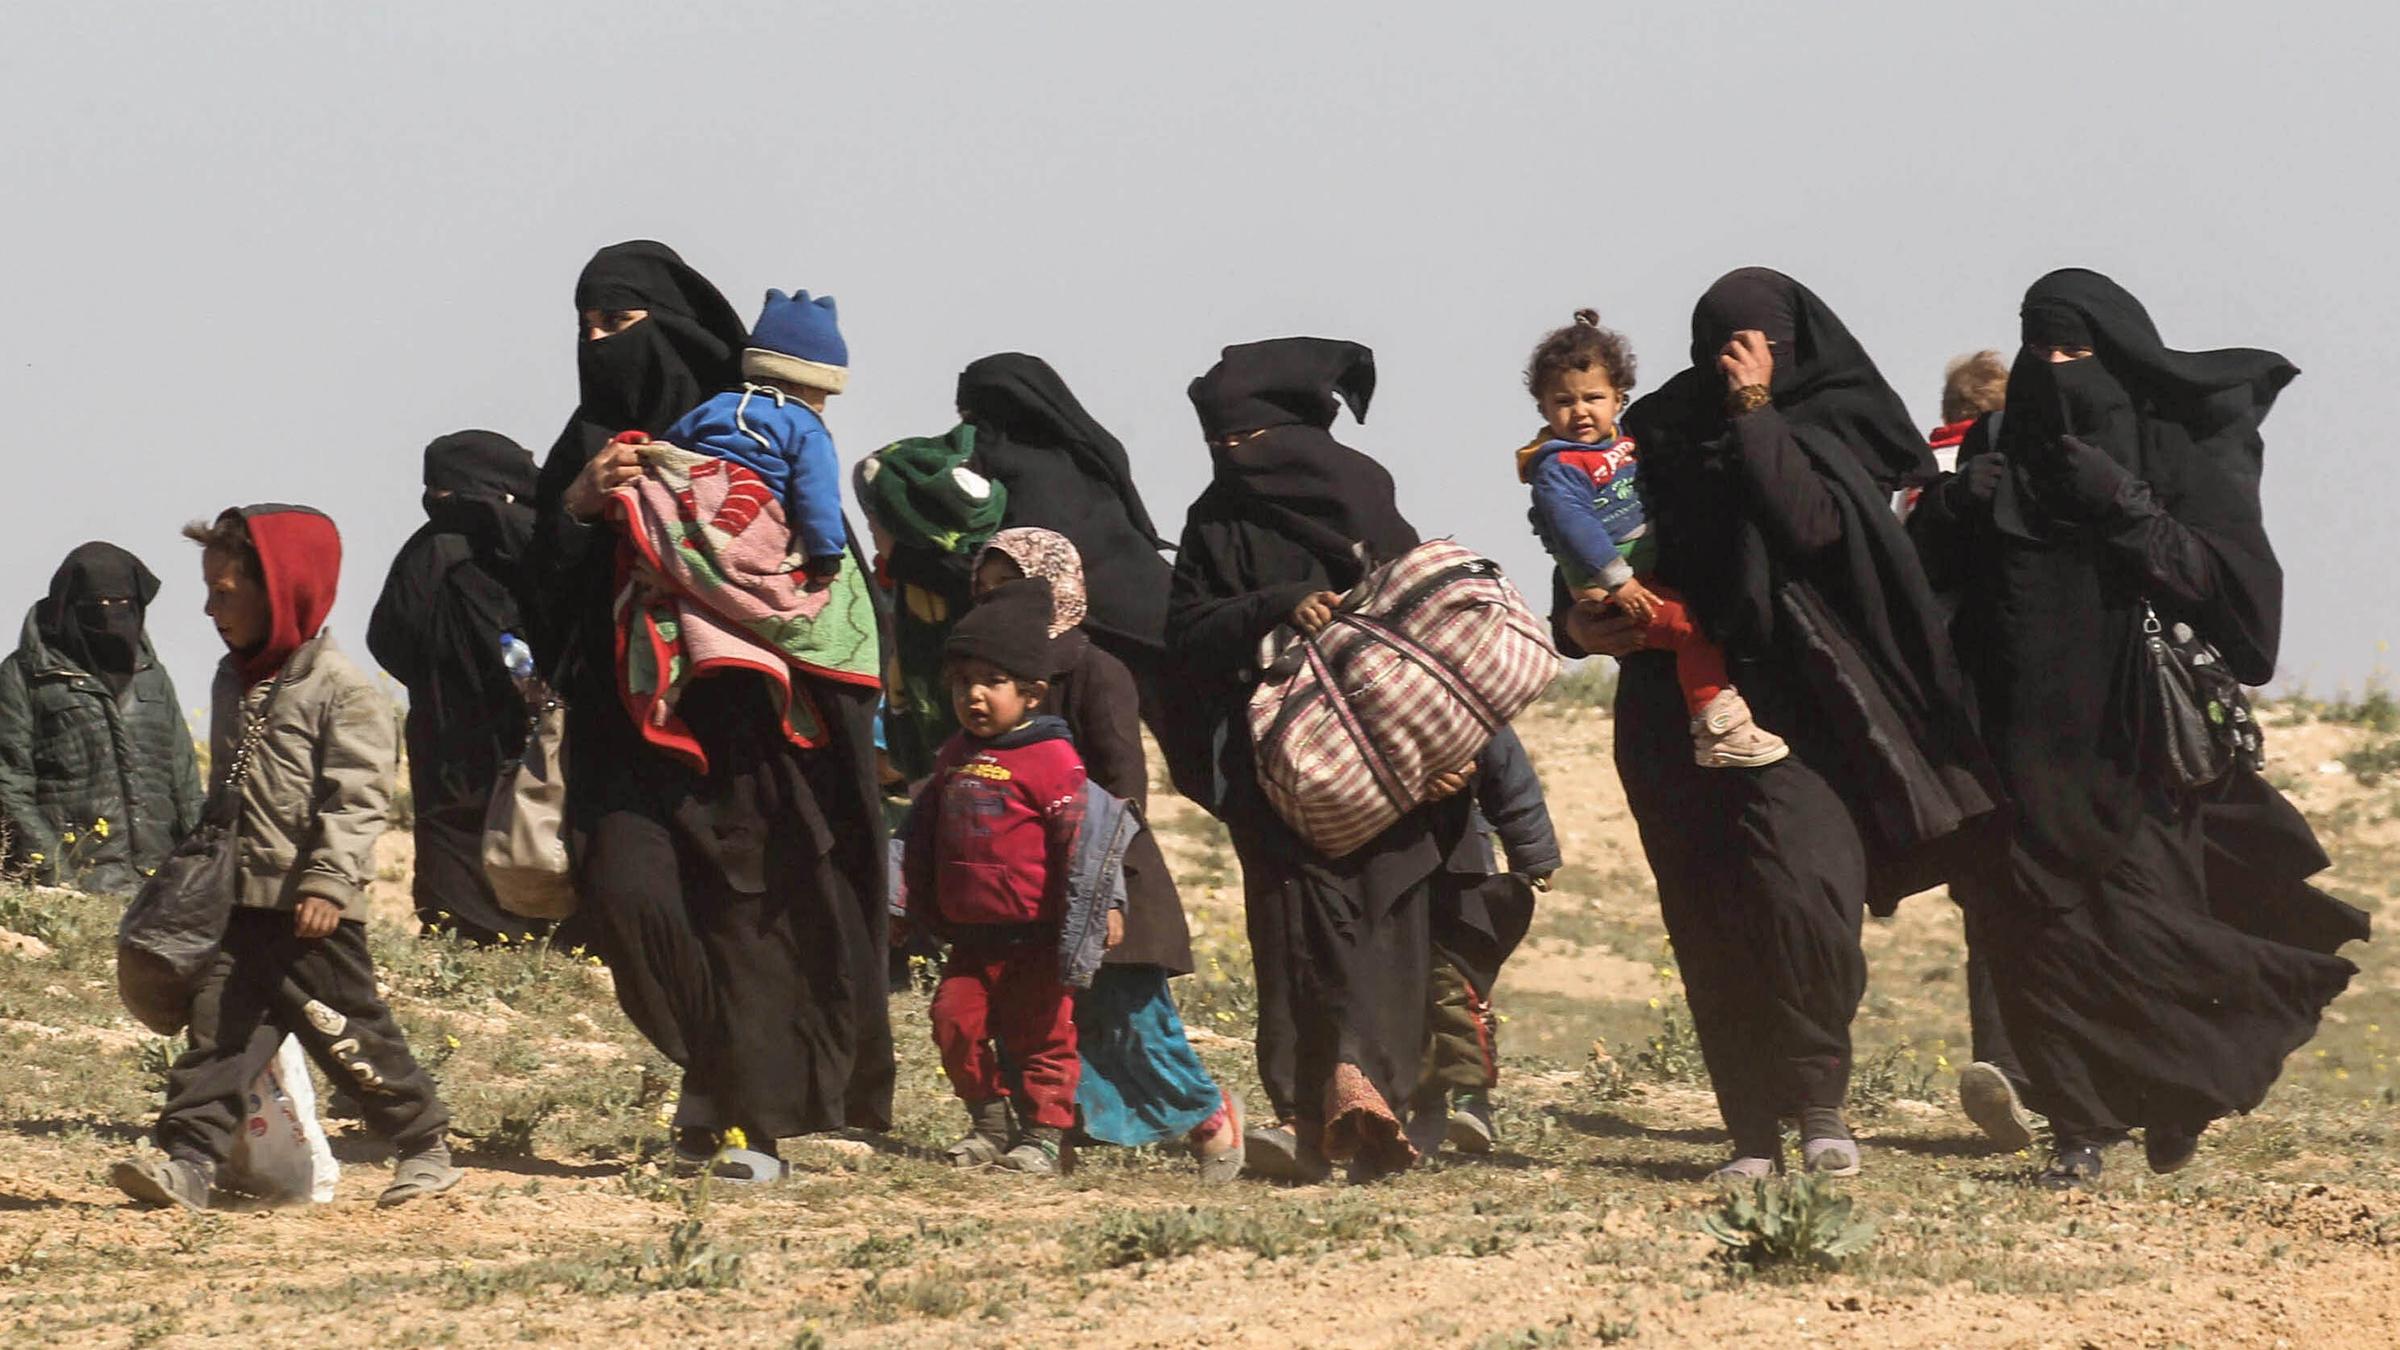 Verhüllte Frauen und Kinder auf freiem Feld im Osten Syriens.  